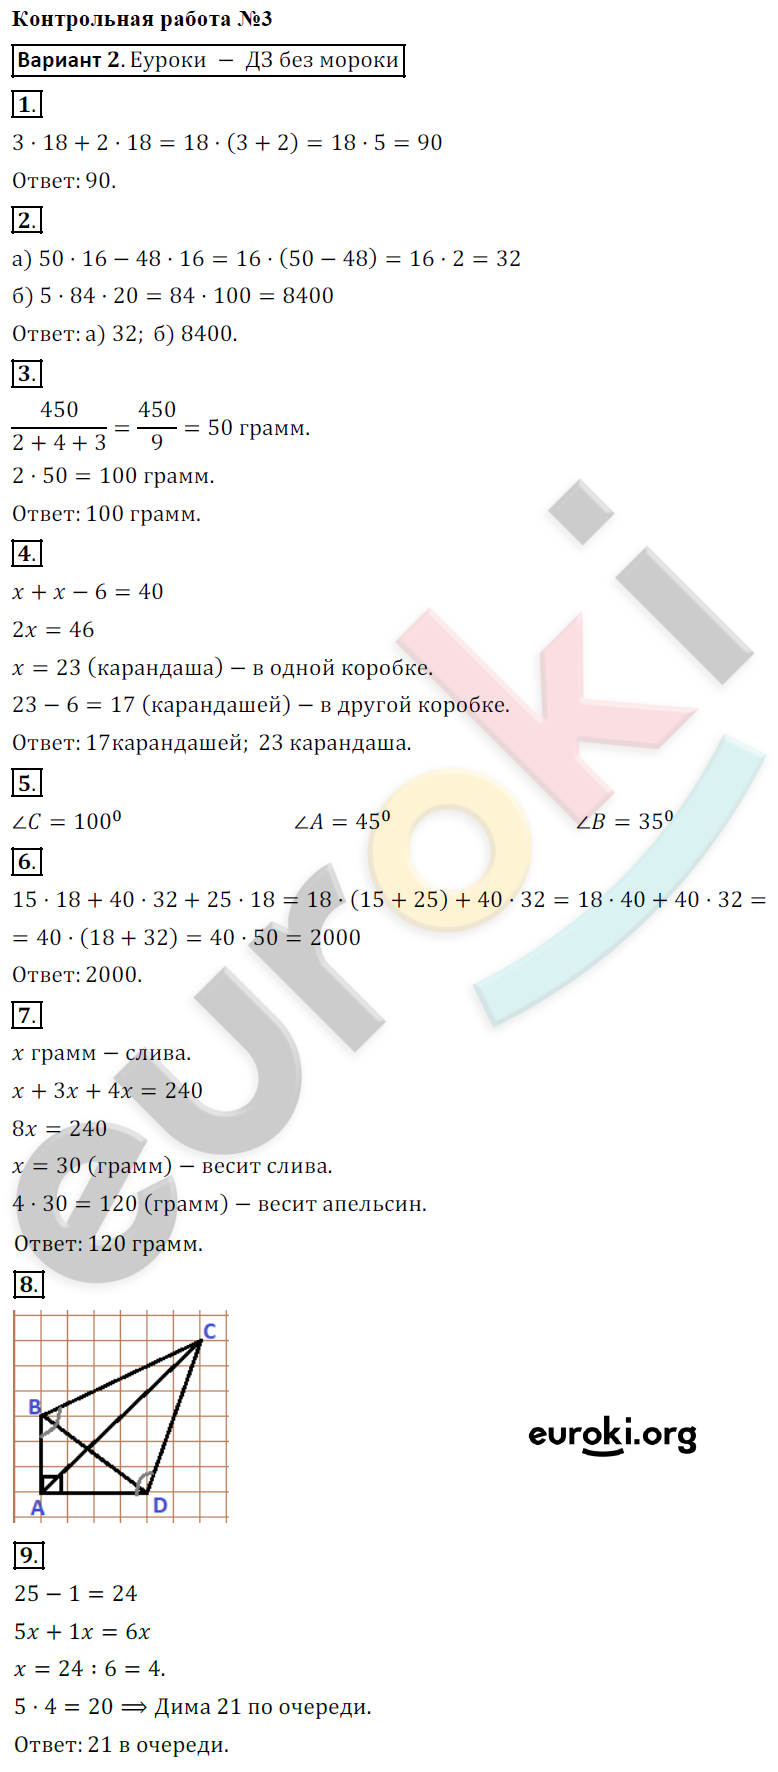 Контрольные работы по математике 5 класс. ФГОС Кузнецова, Минаева Вариант 2